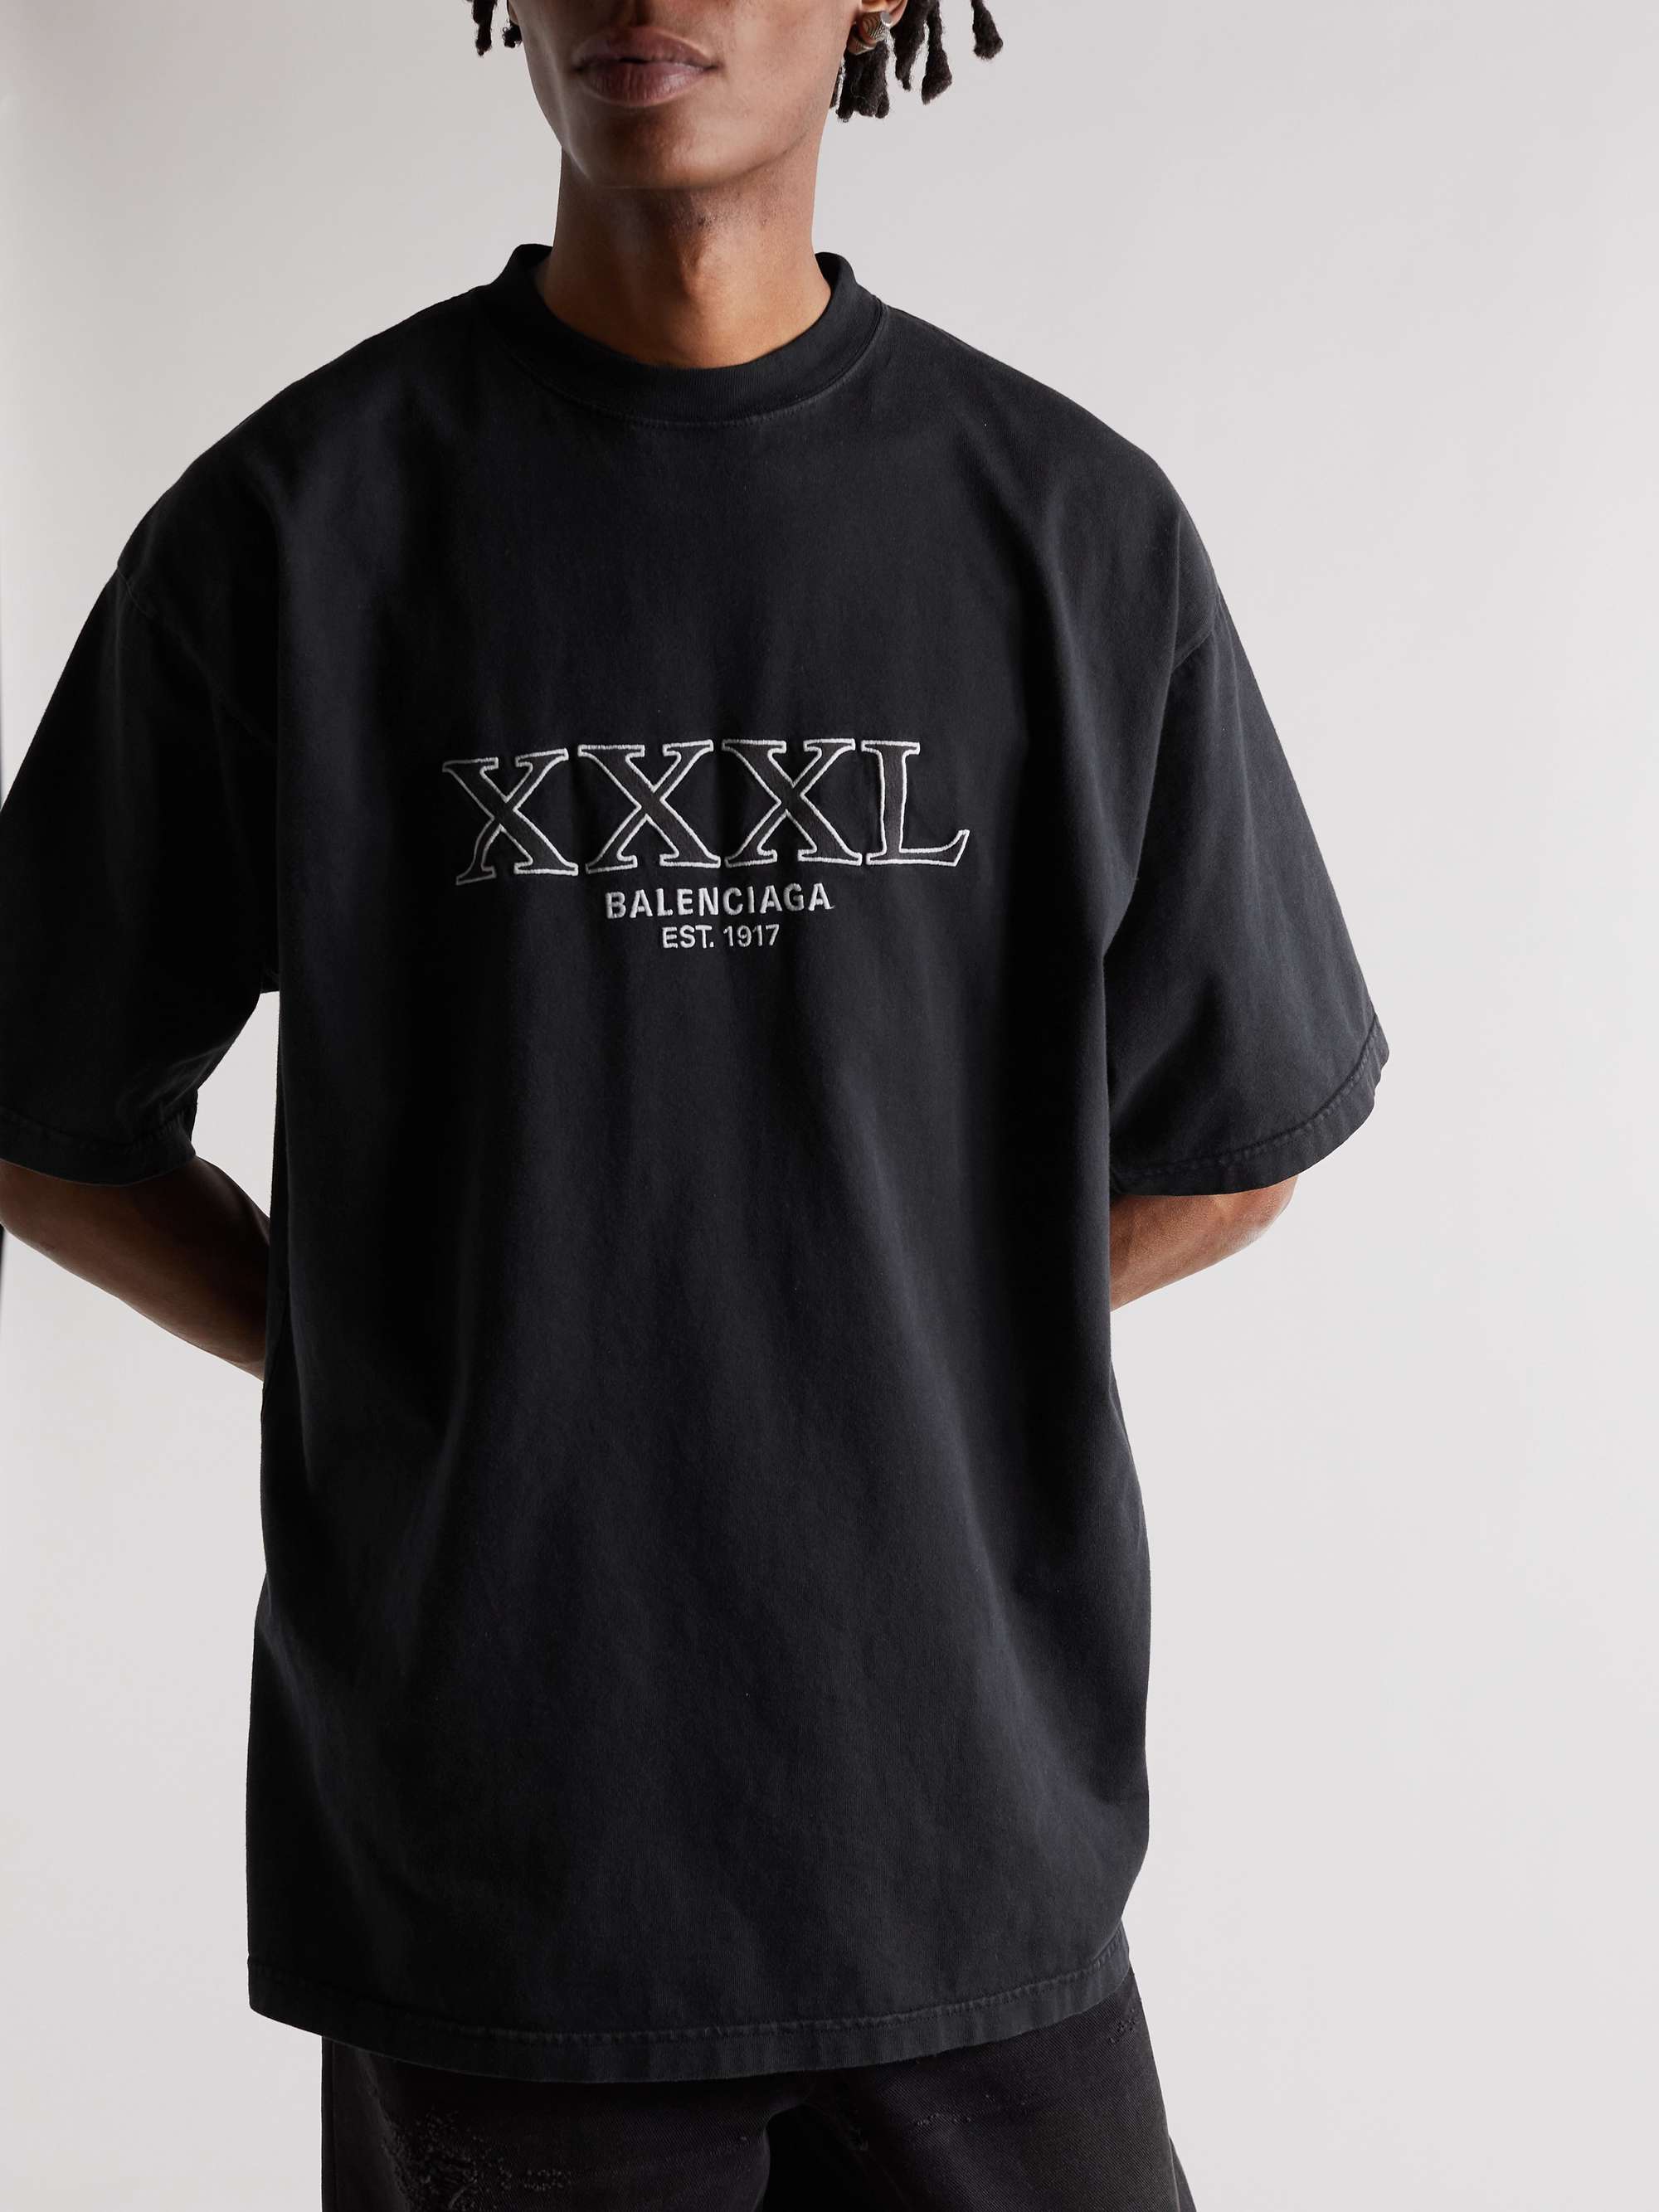 完売アイテム BALENCIAGA XXXL Tシャツ | www.barkat.tv